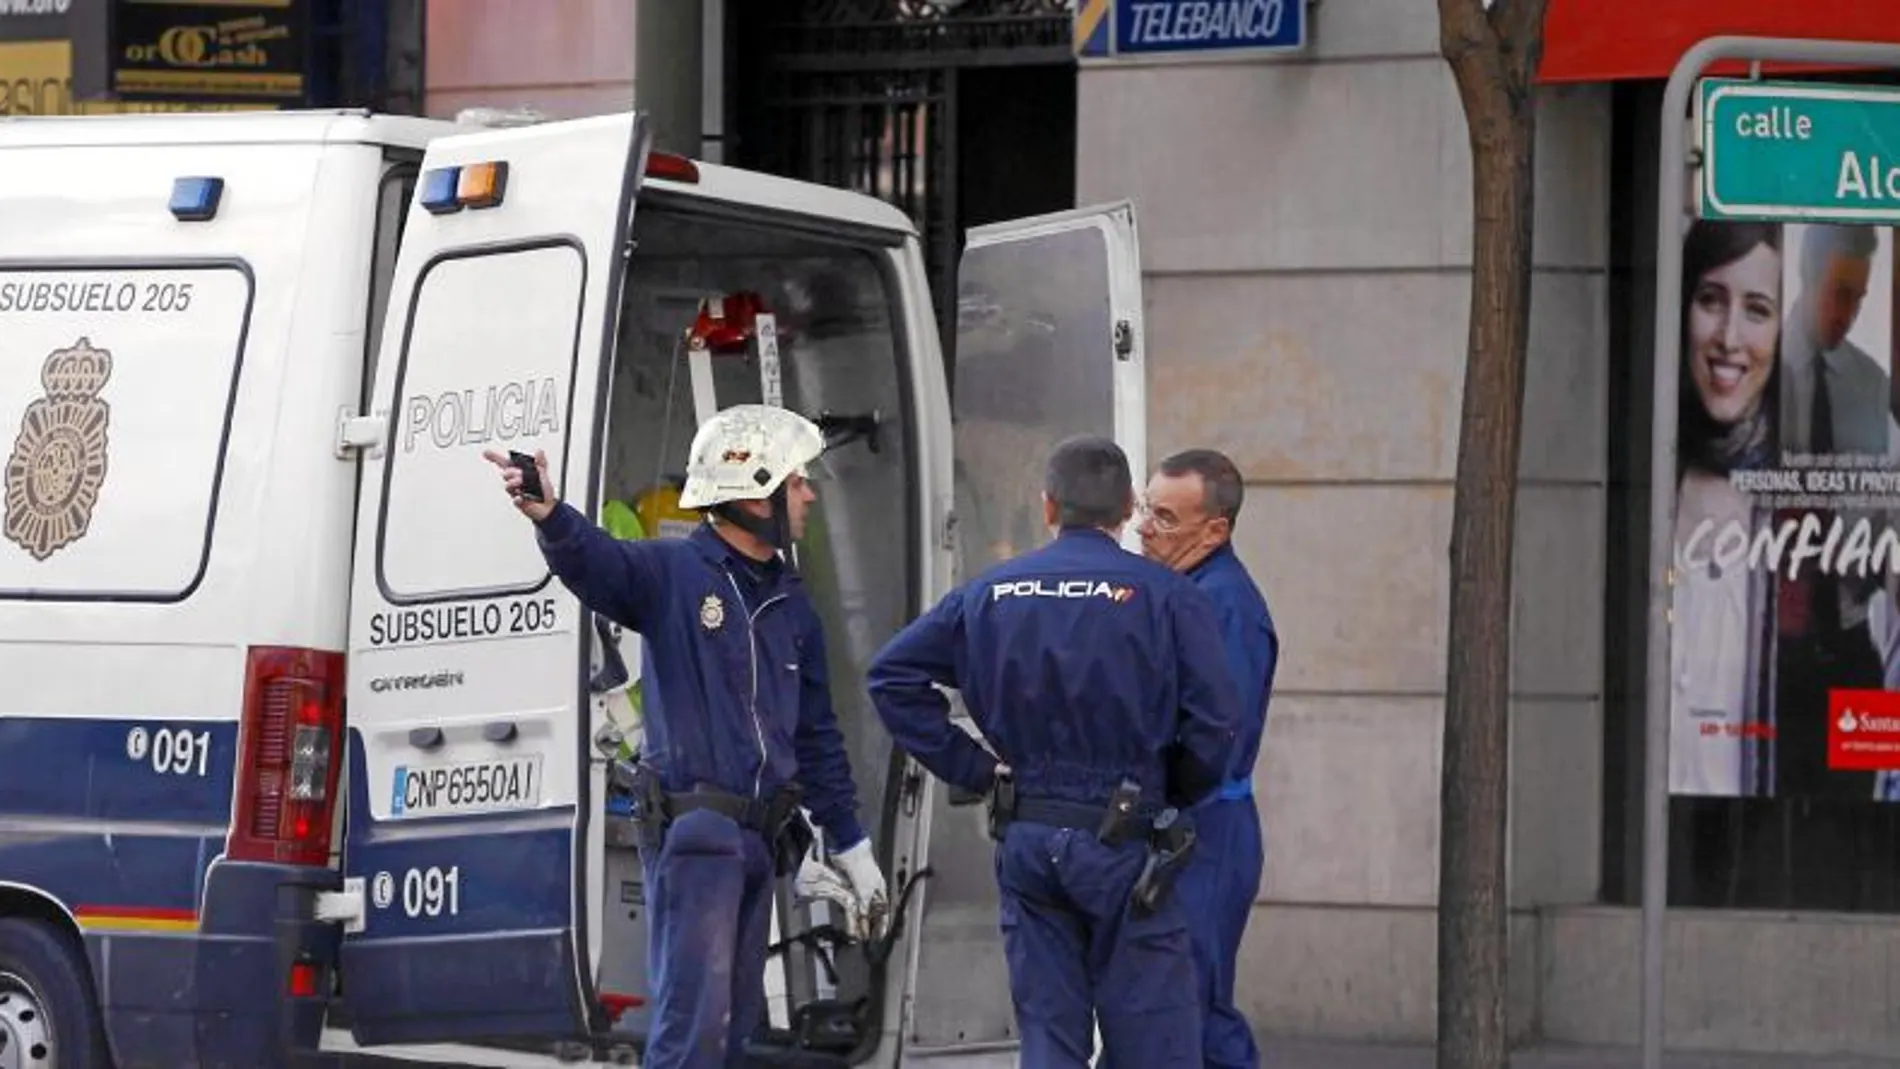 La Unidad de Subsuelo de la Policía Nacional rastreó sin éxito la zona por la que podrían haber huido los ladrones a la altura del número 74 de la calle Alcalá